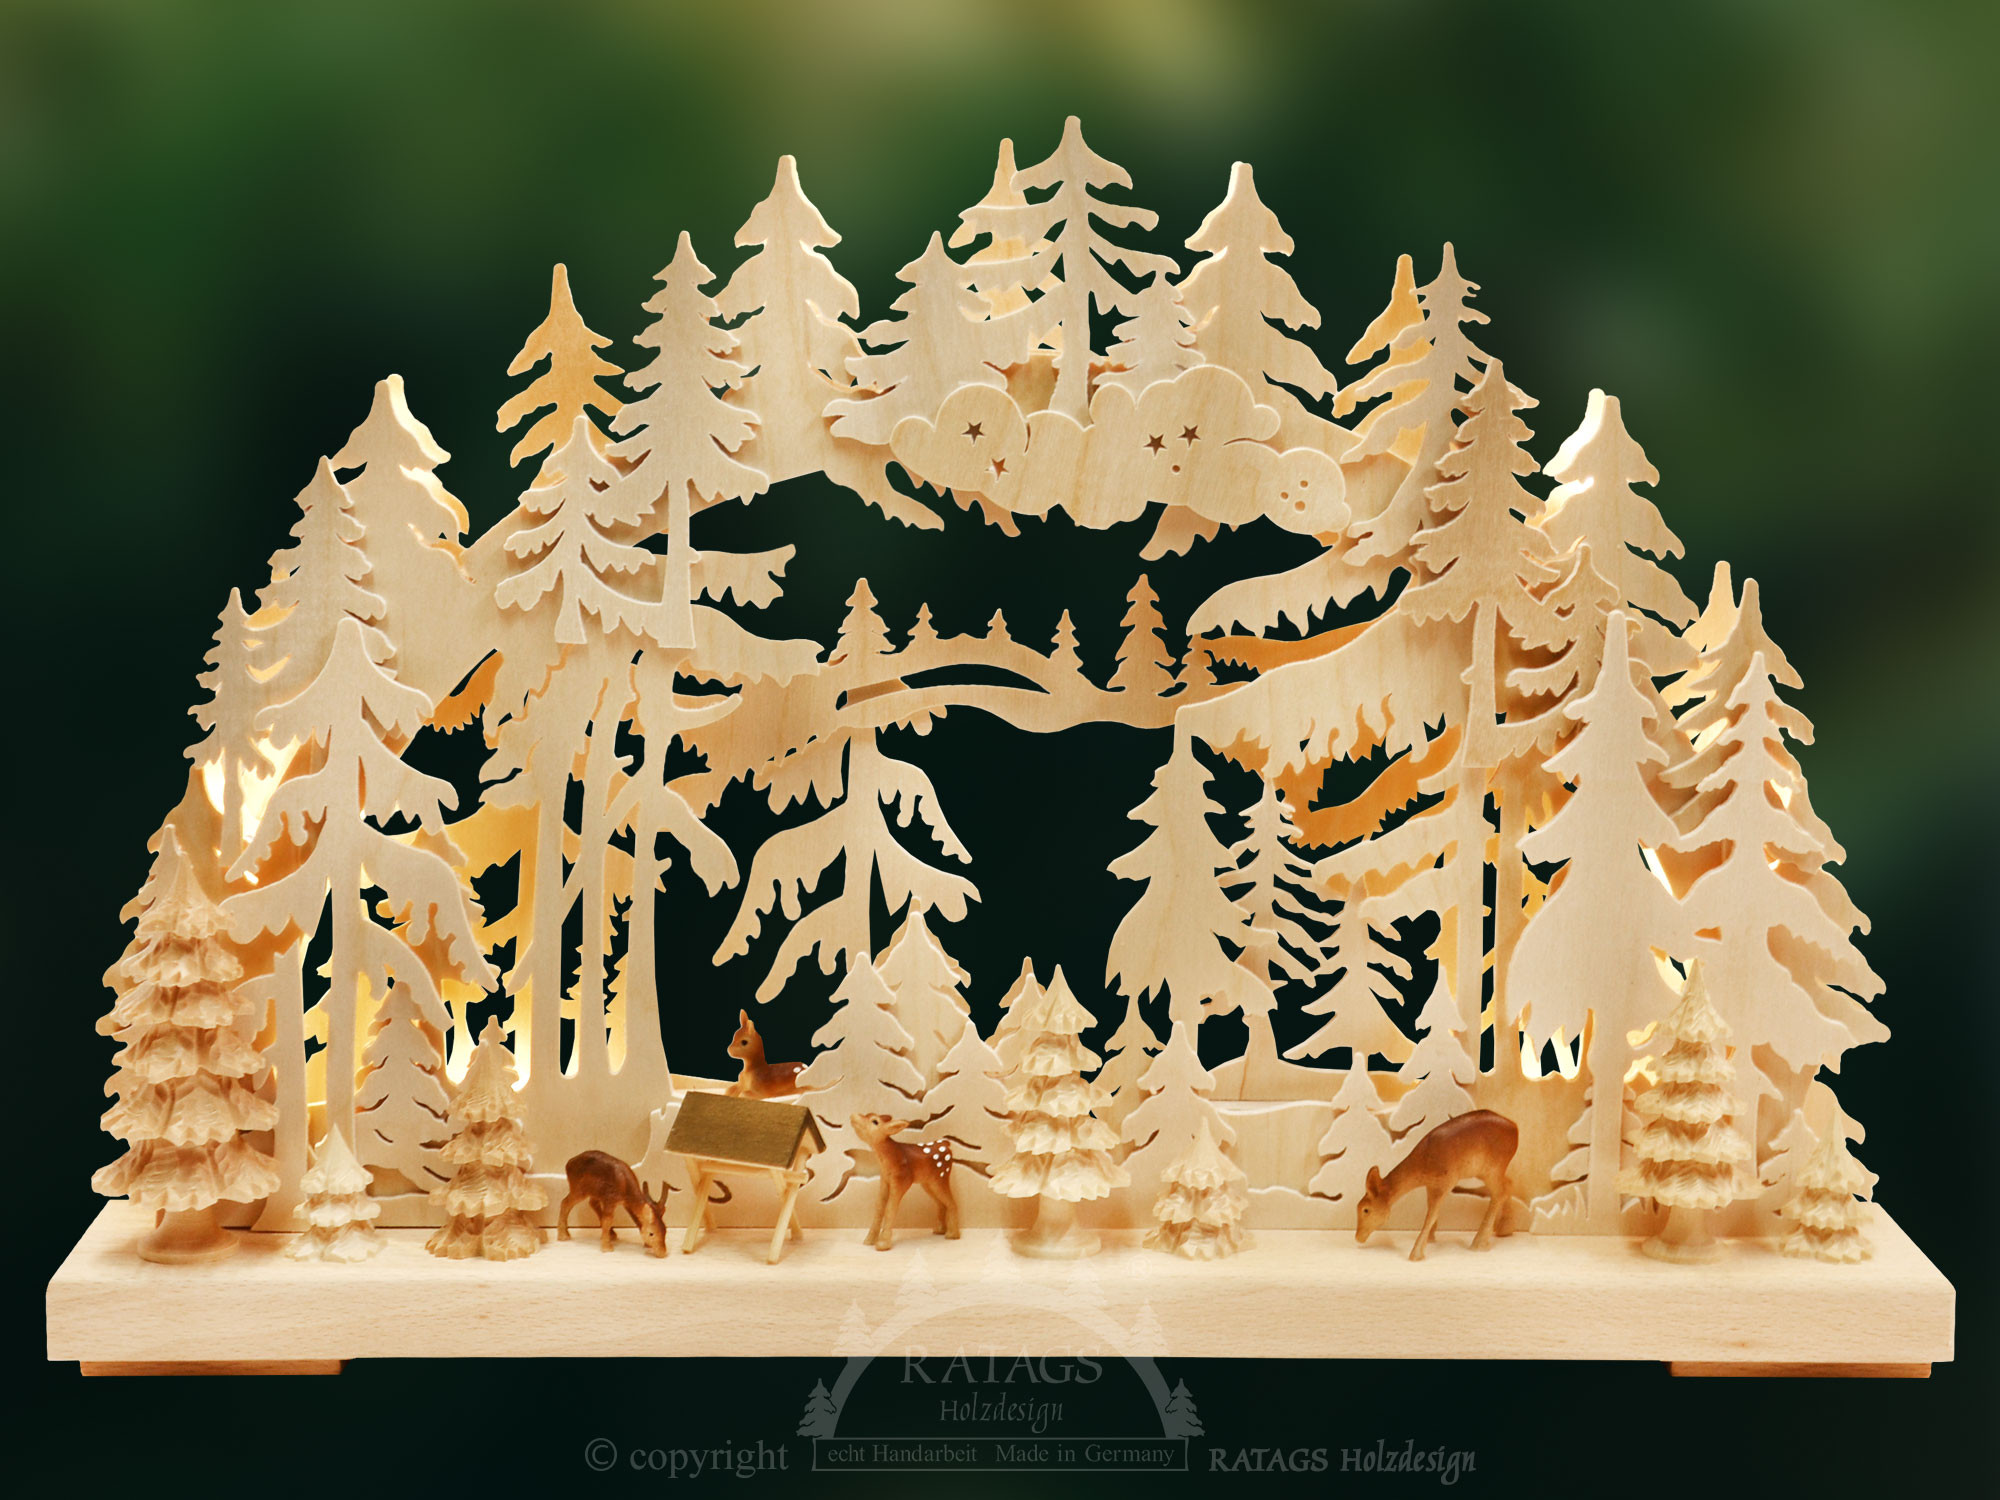 Ratags Holzdesign 3D-Schwibbogen Rehe auf der Lichtung, klein